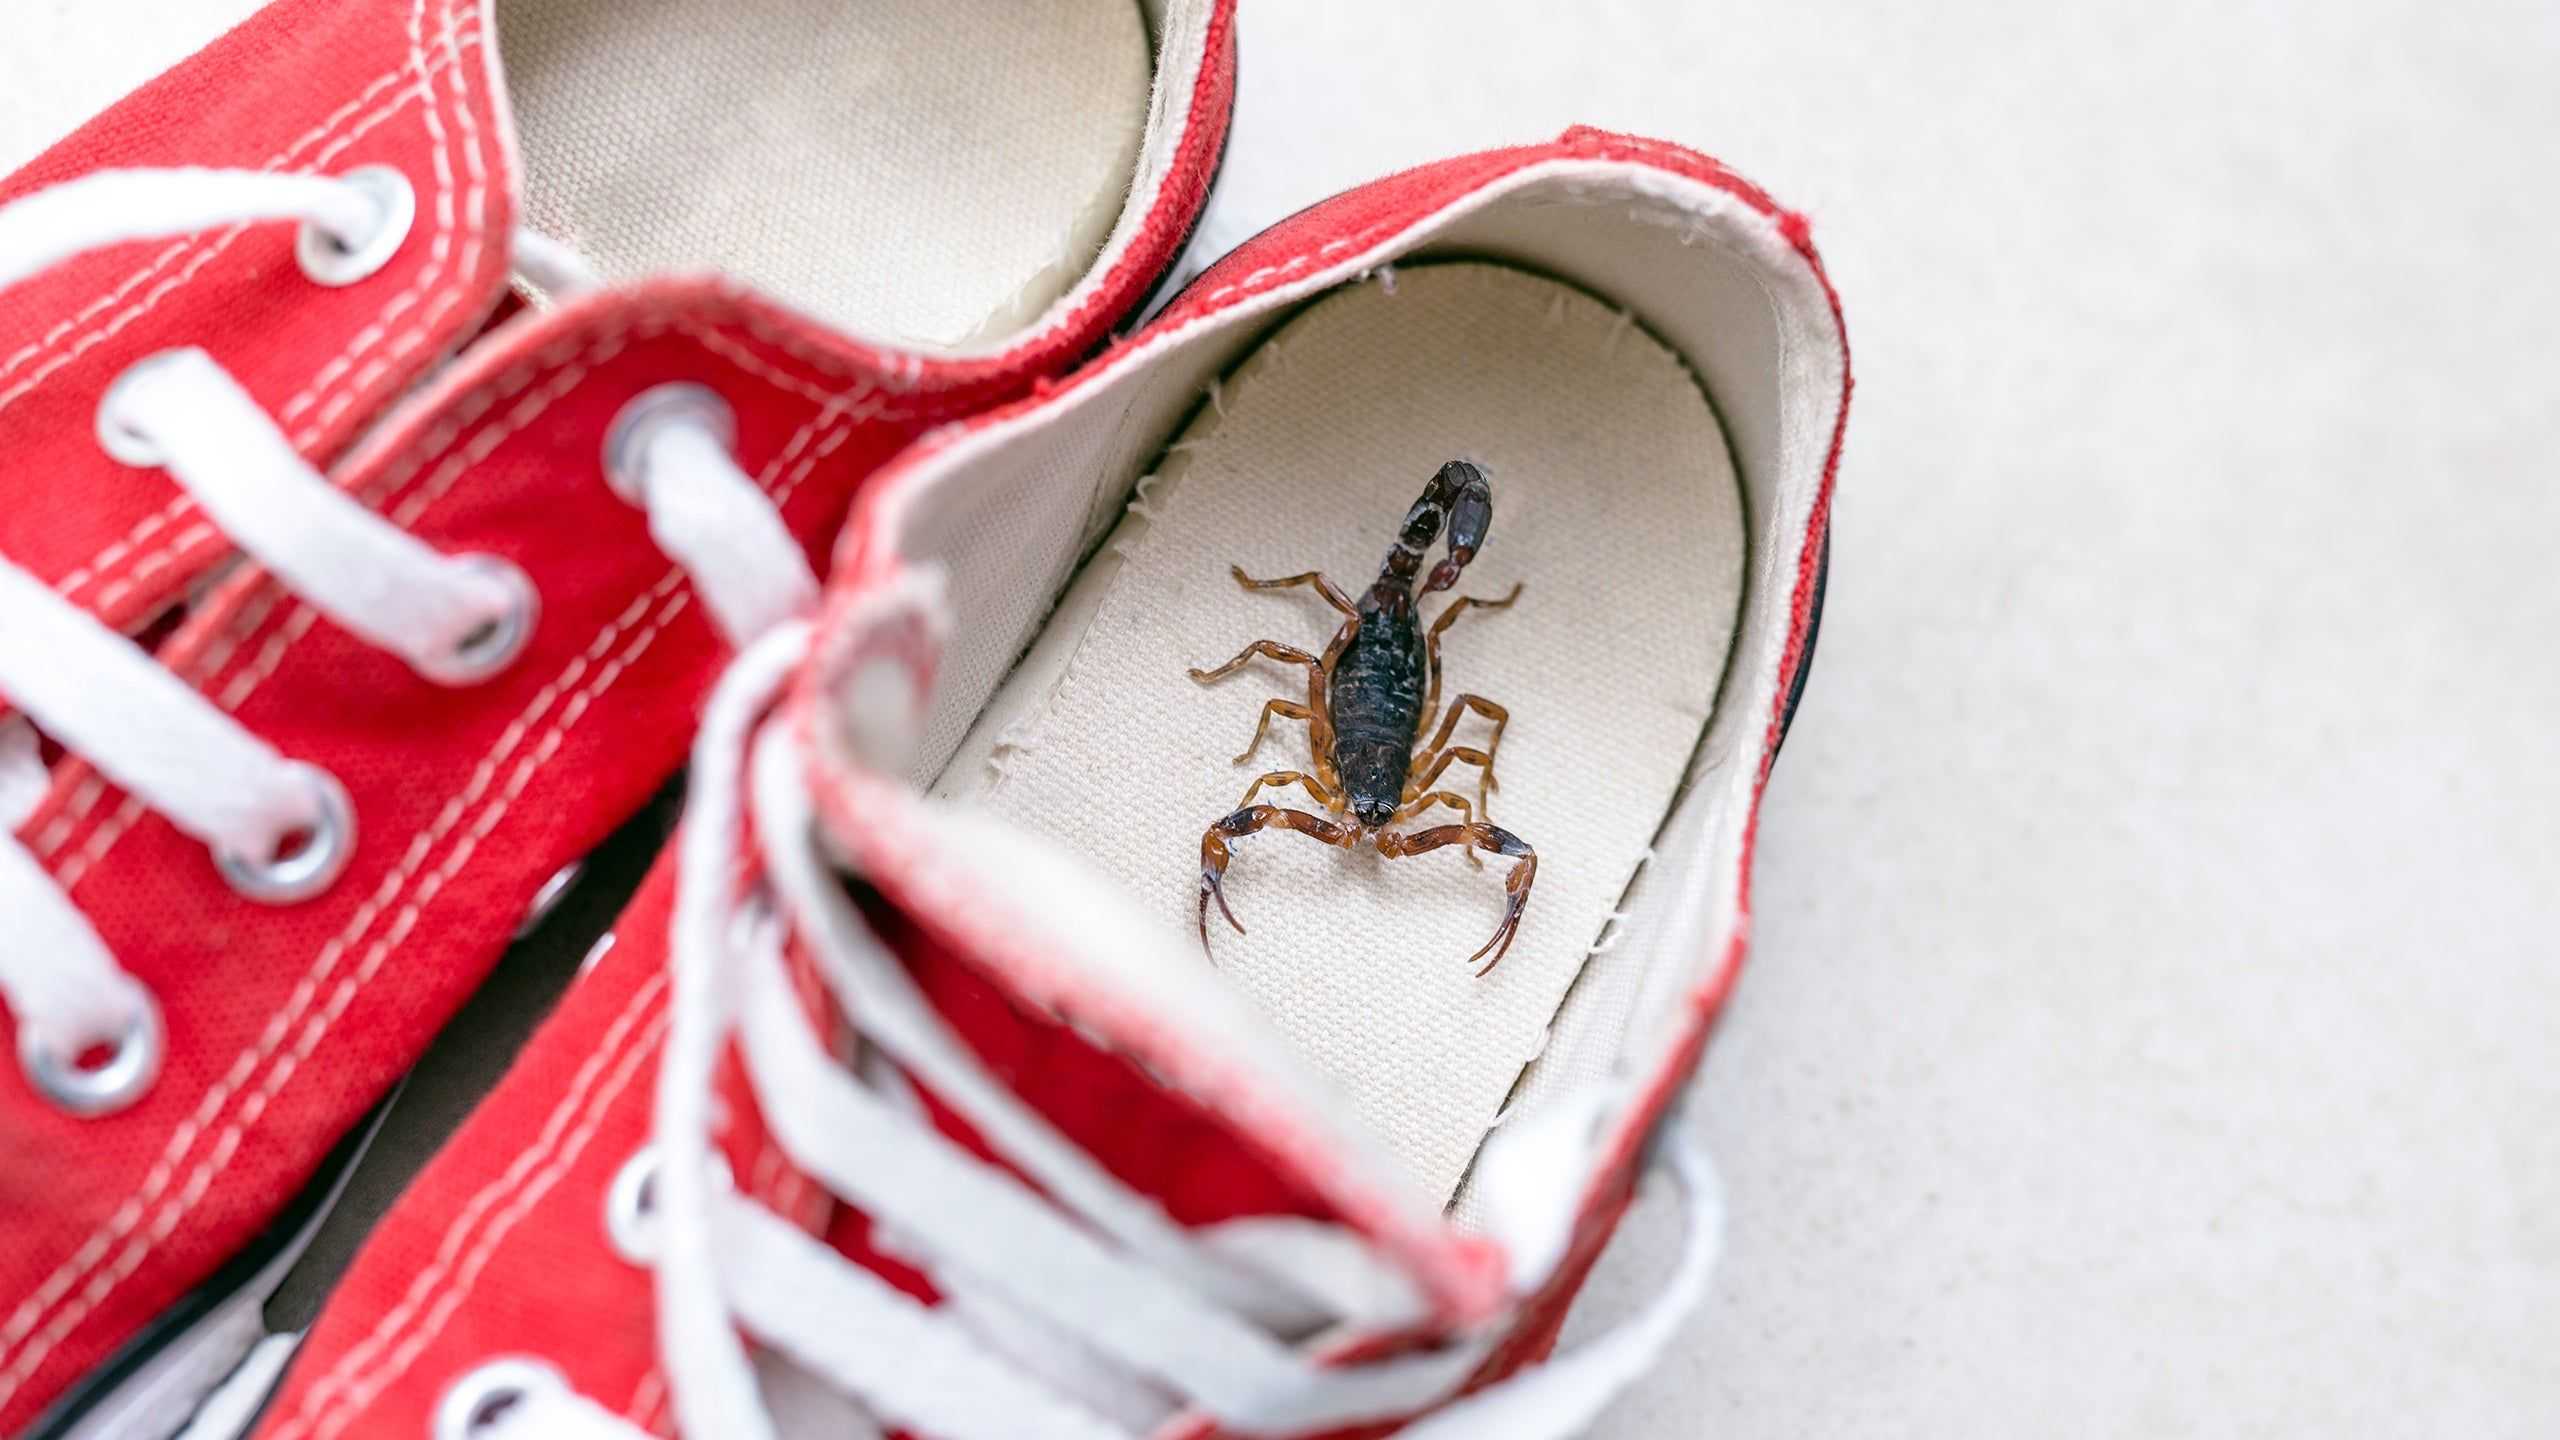 Scorpion in a shoe